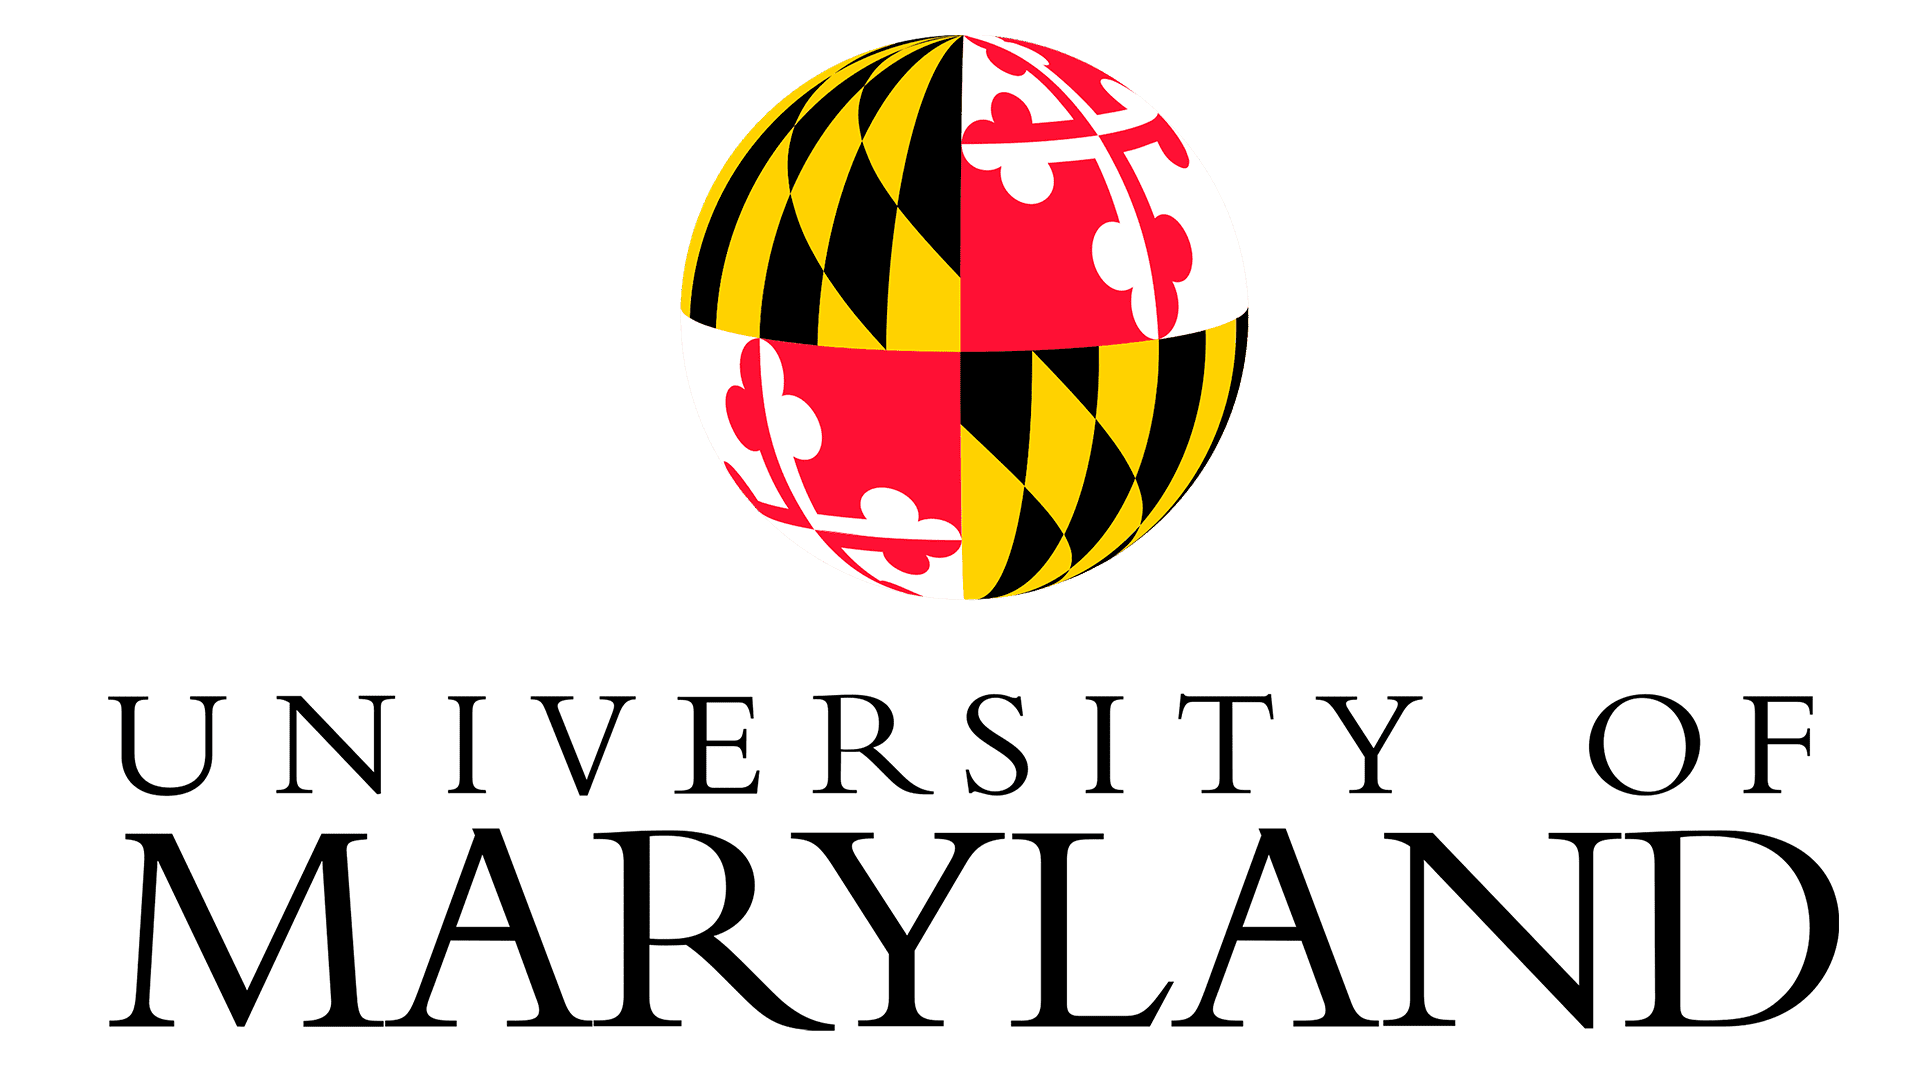 University of Maryland's logo